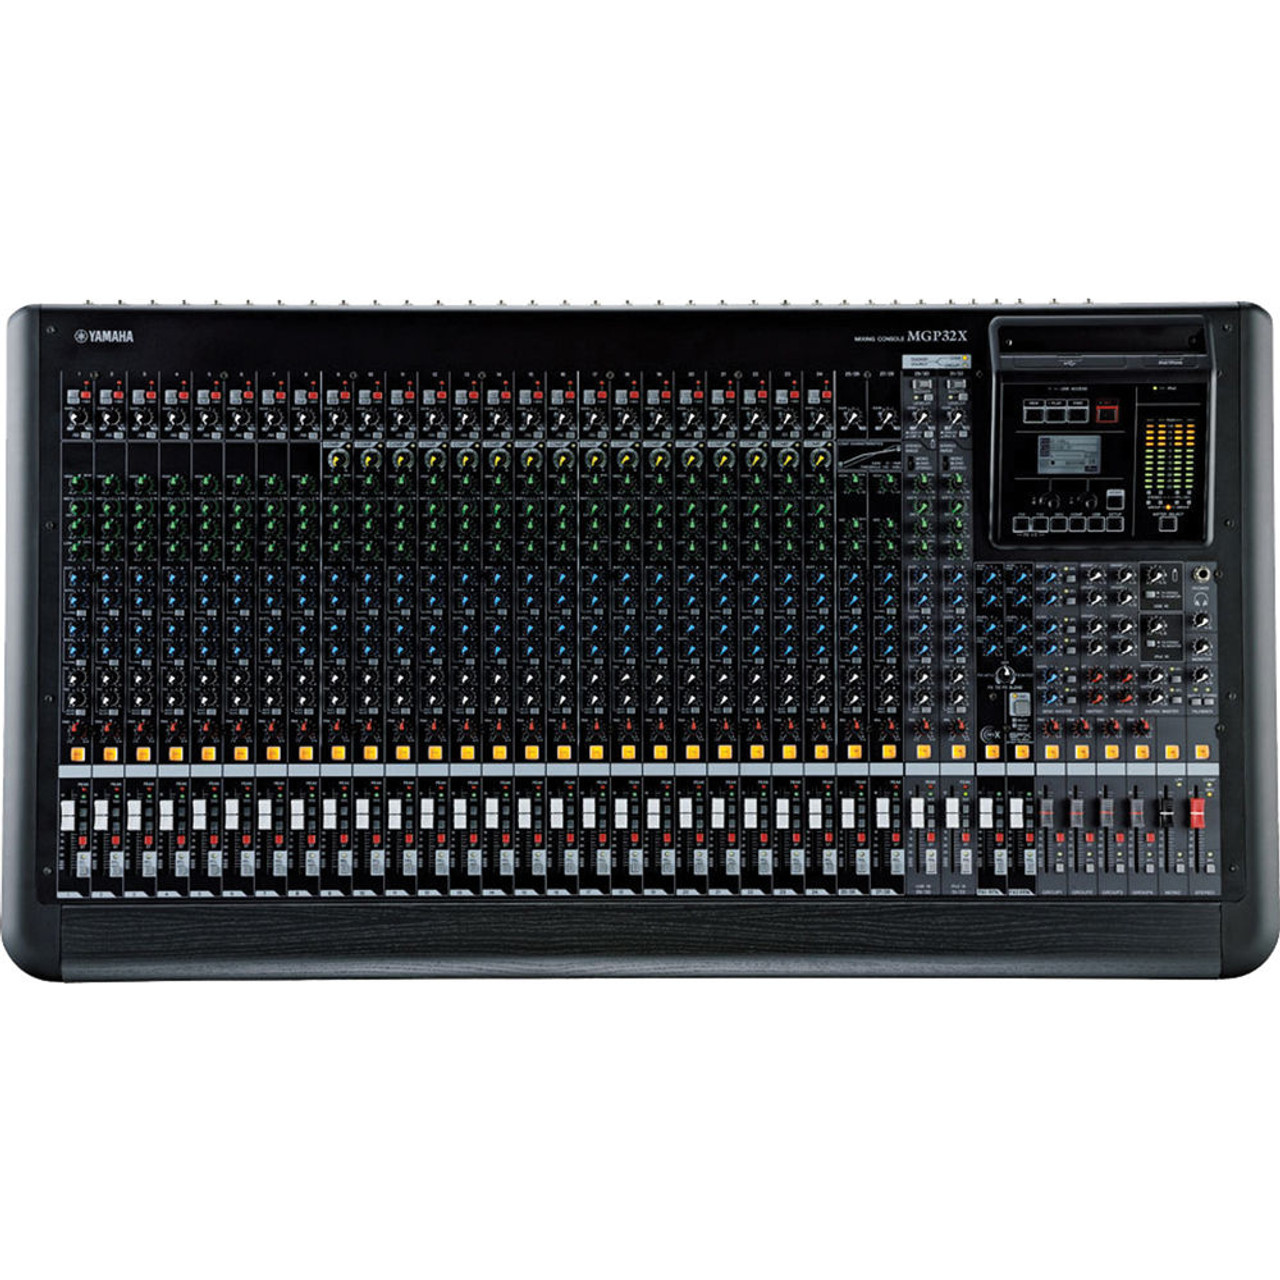 MGP32X 32-Channel Mixer | FrontEndAudio.com